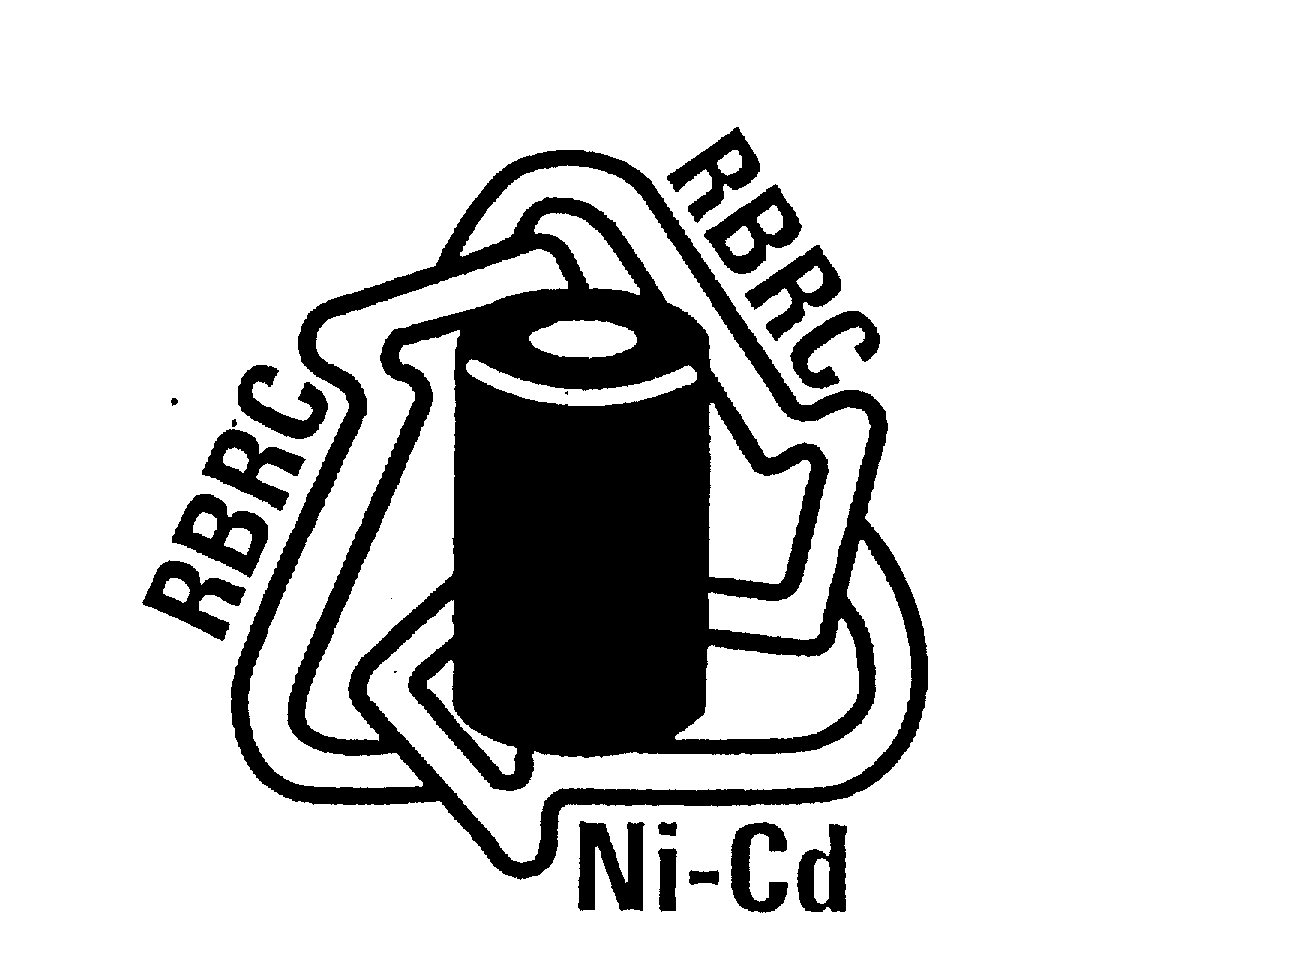 RBRC RBRC NI-CD